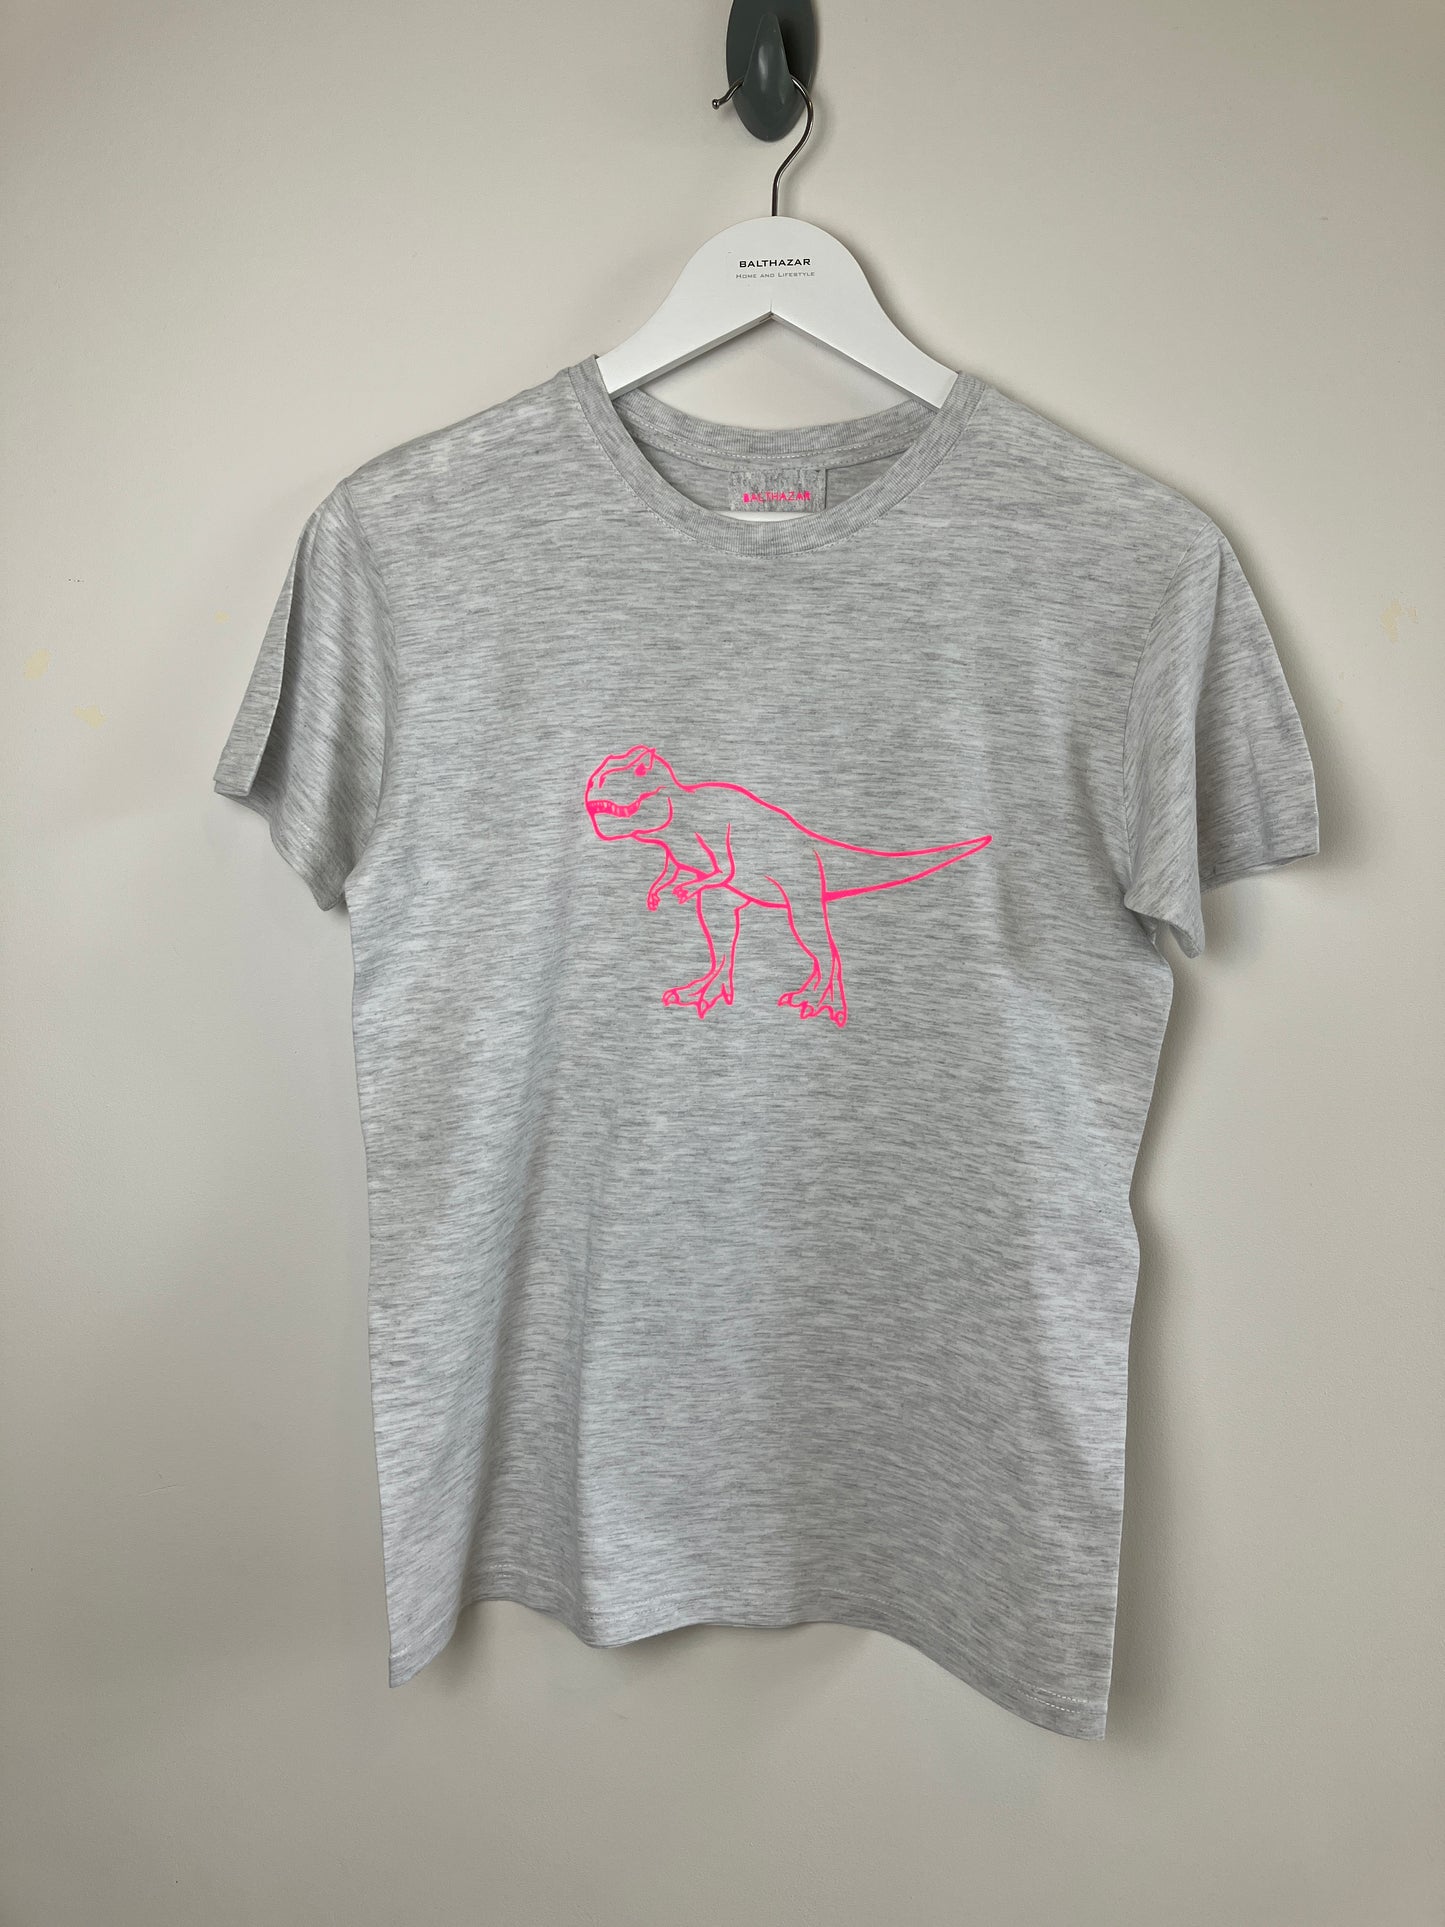 Large Dinosaur t-shirt- customised dinosaurs